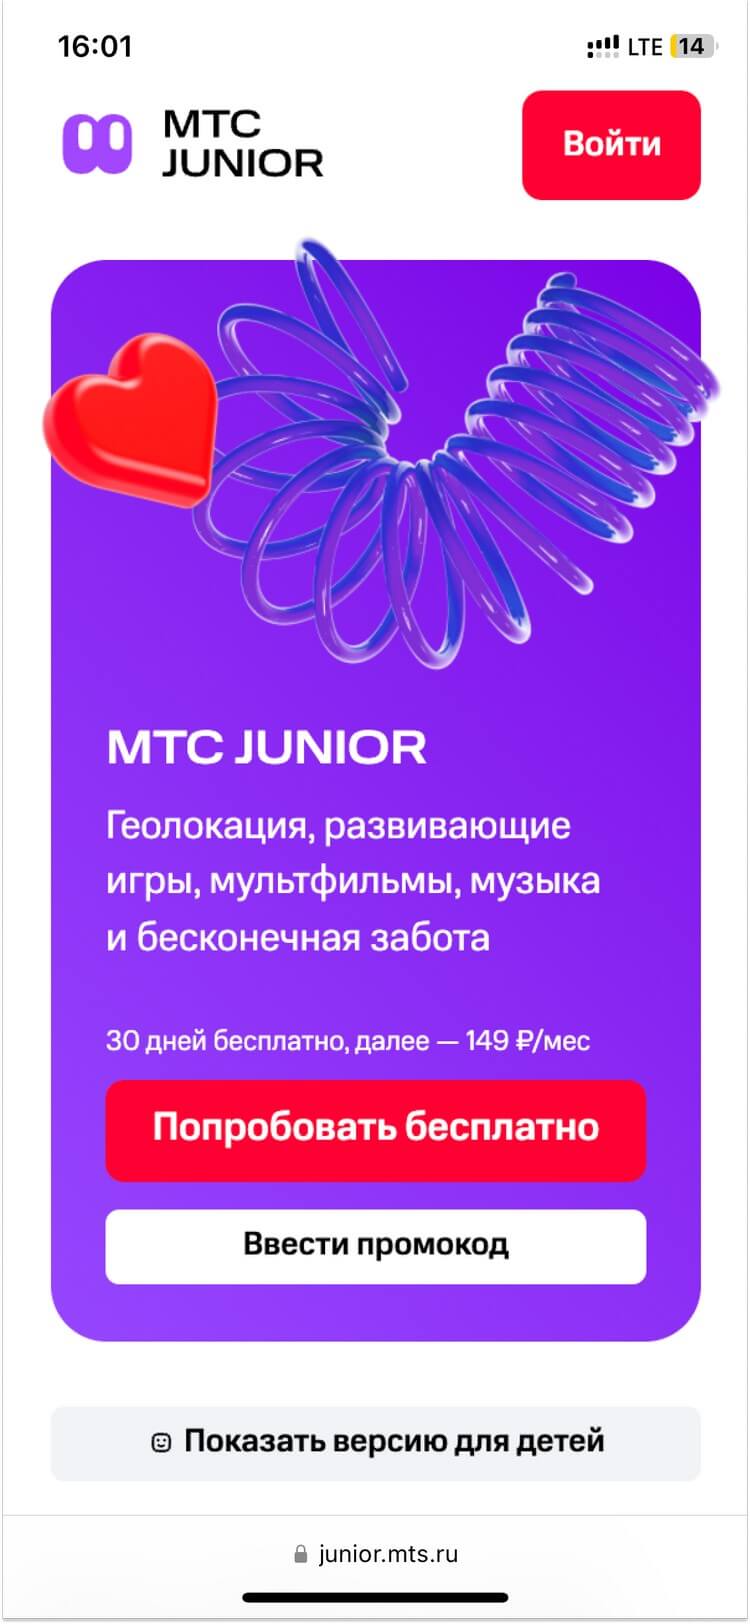 МТС Junior — развлечения, общение и безопасность в одной подписке для детей и их родителей